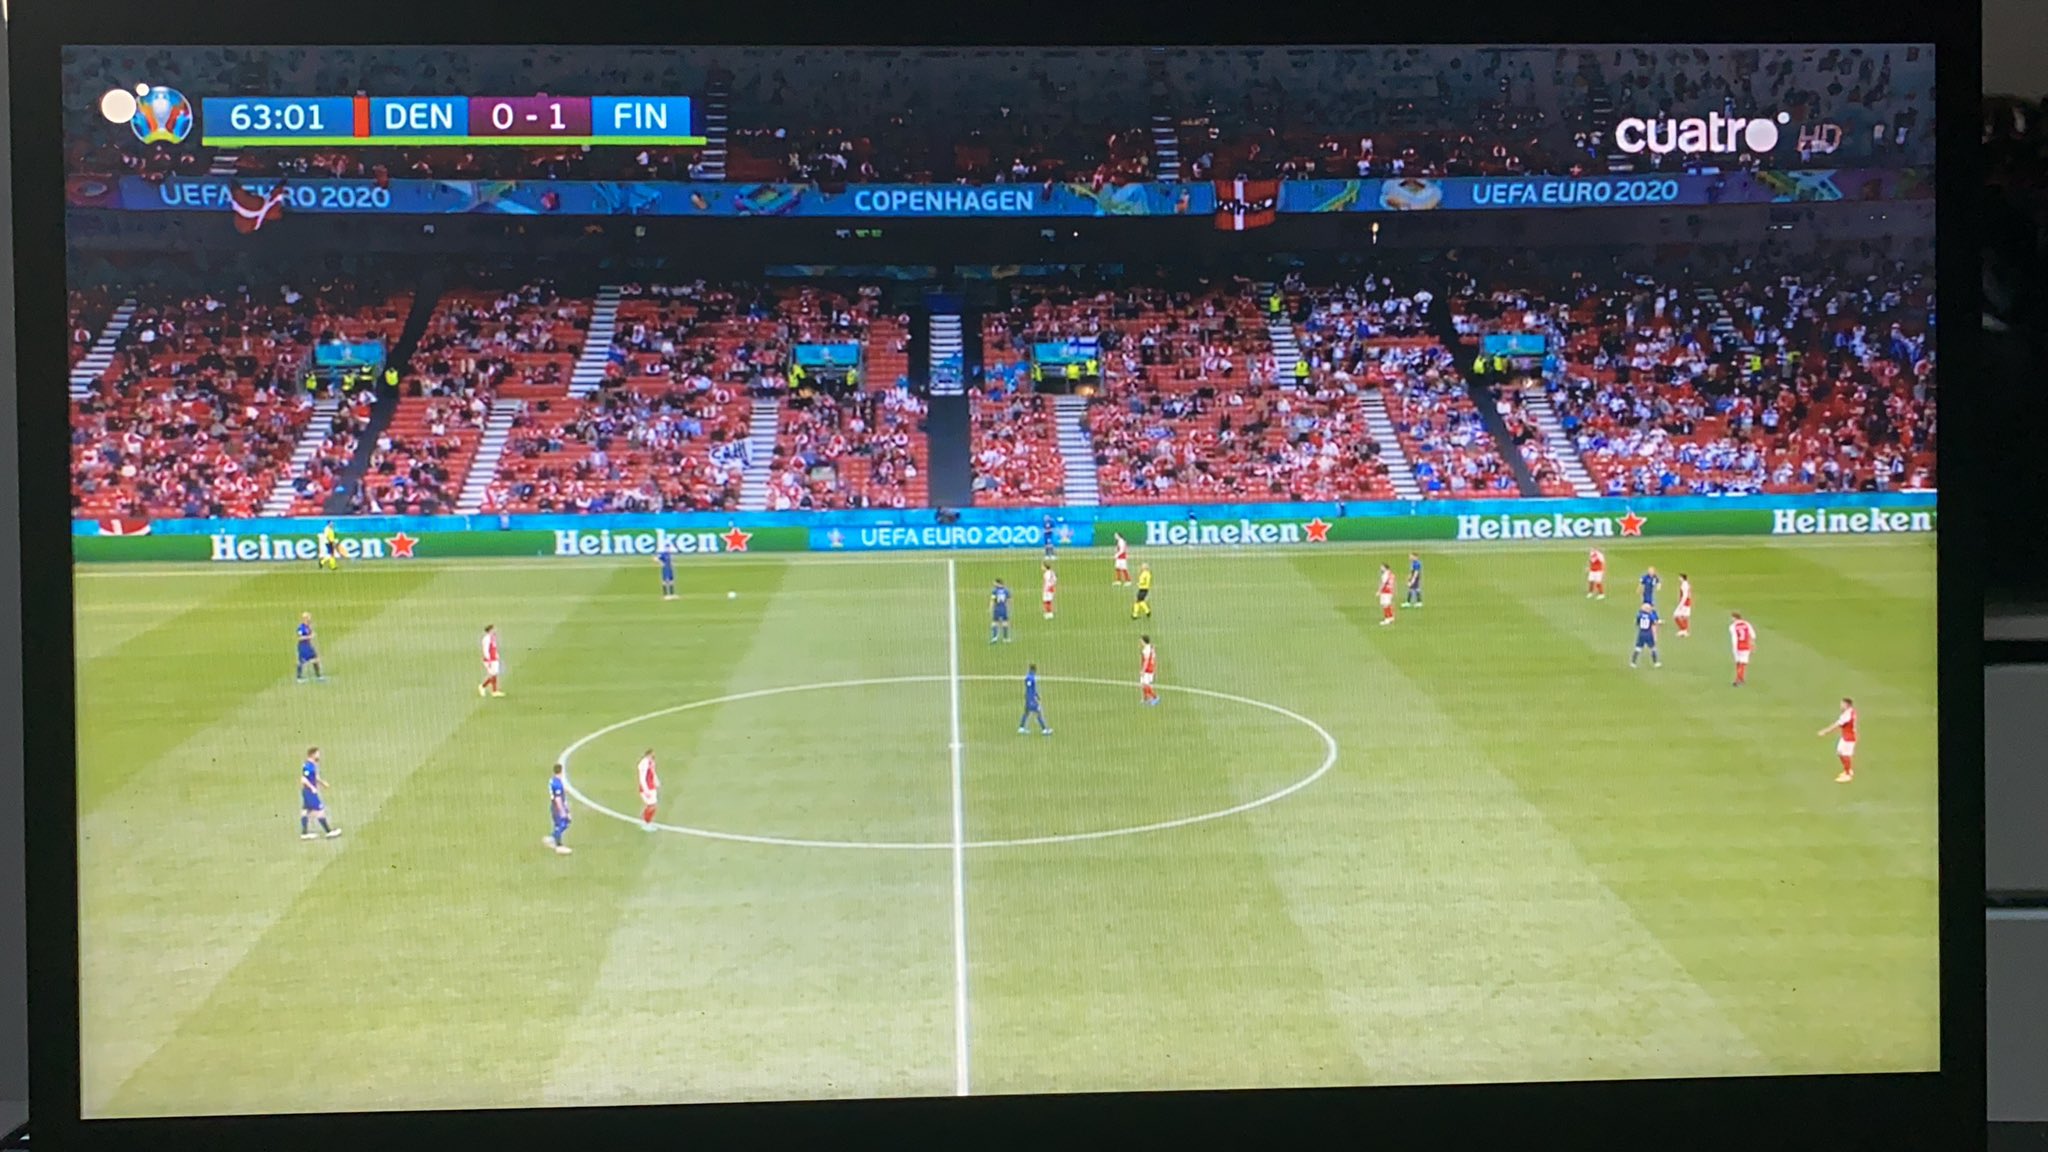 Hisスペイン サッカー観戦 ユーロ を放映しているメディアセットグループは デンマークvsフィンランド をこのままクアトロで放送 一方 ベルギーvsロシア は所有する別チャンネルのテレシンコで急遽 放送することとなった様です